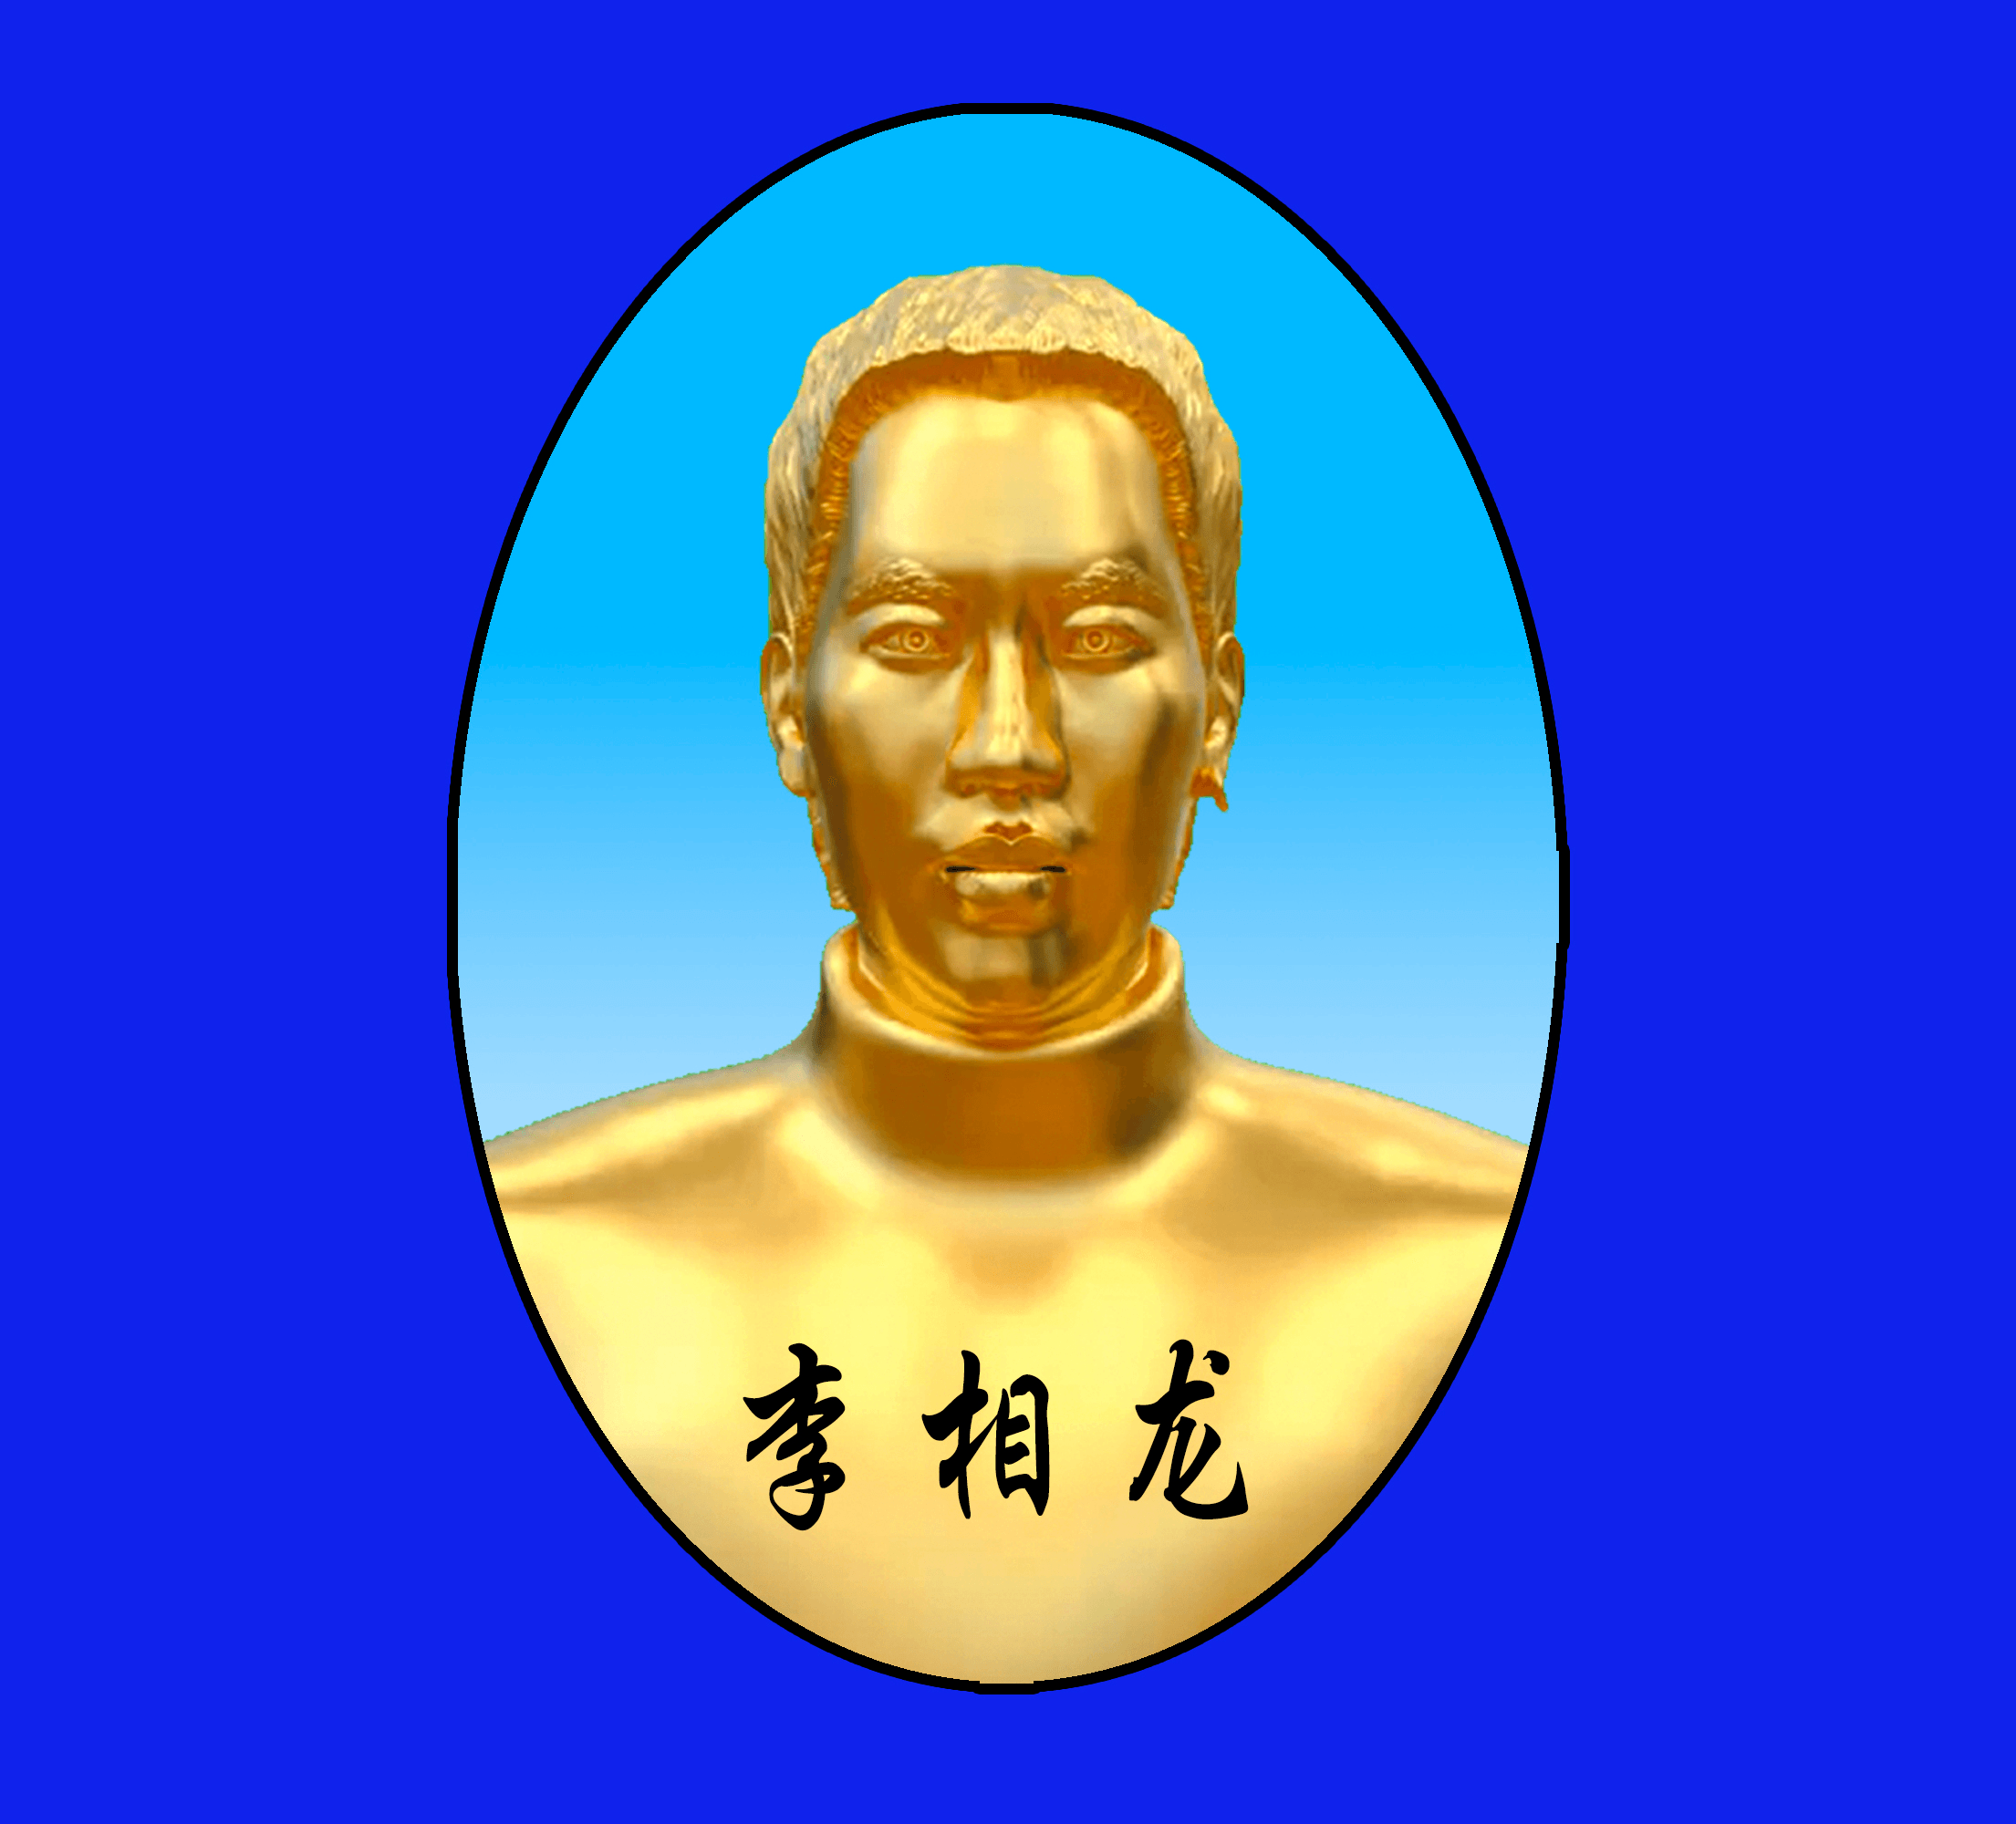 Xianglong